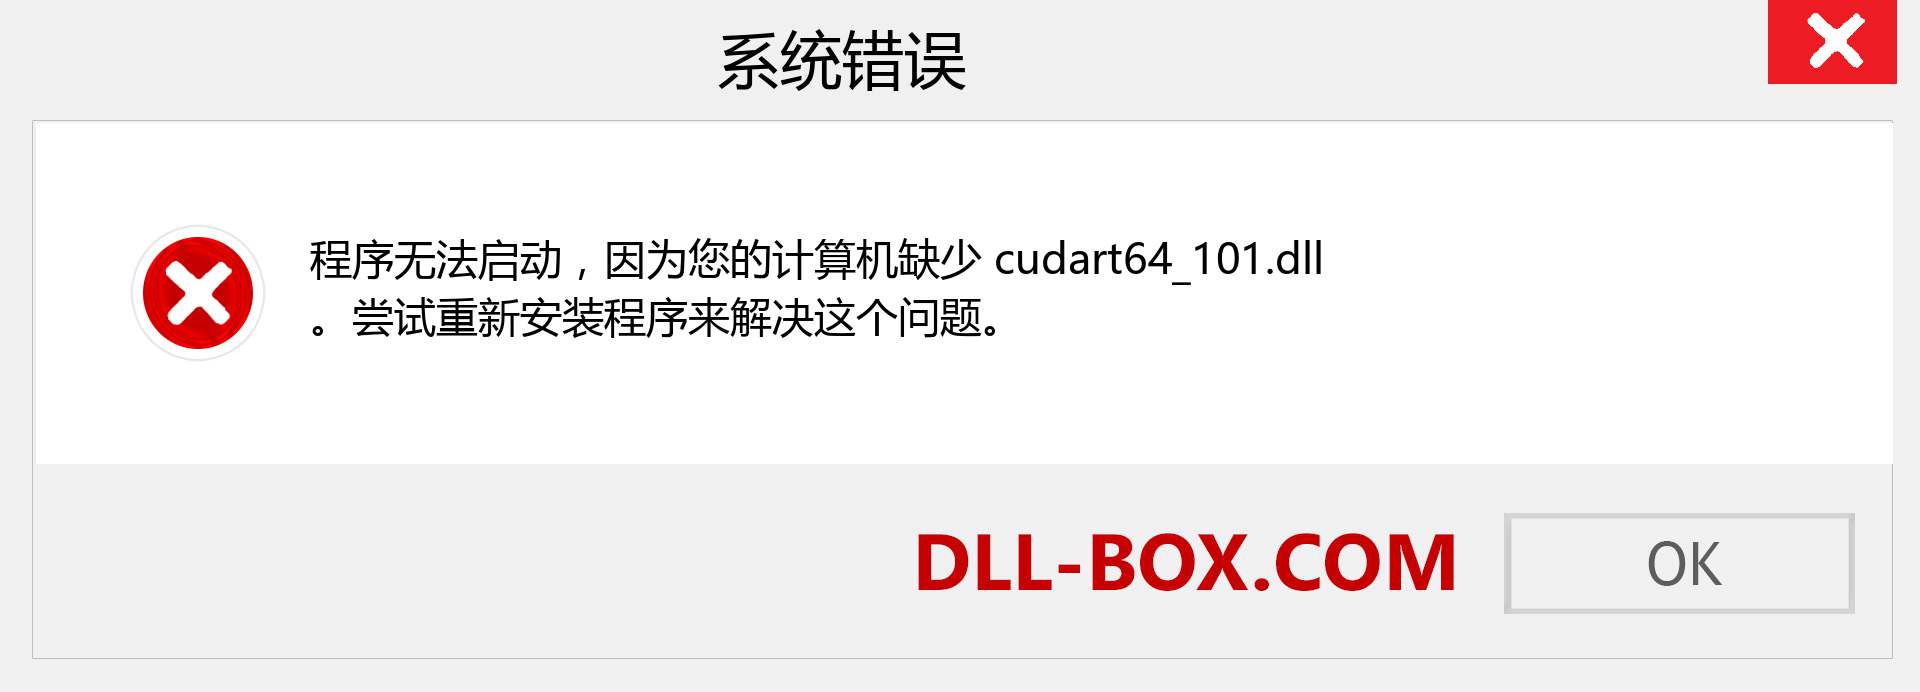 cudart64_101.dll 文件丢失？。 适用于 Windows 7、8、10 的下载 - 修复 Windows、照片、图像上的 cudart64_101 dll 丢失错误